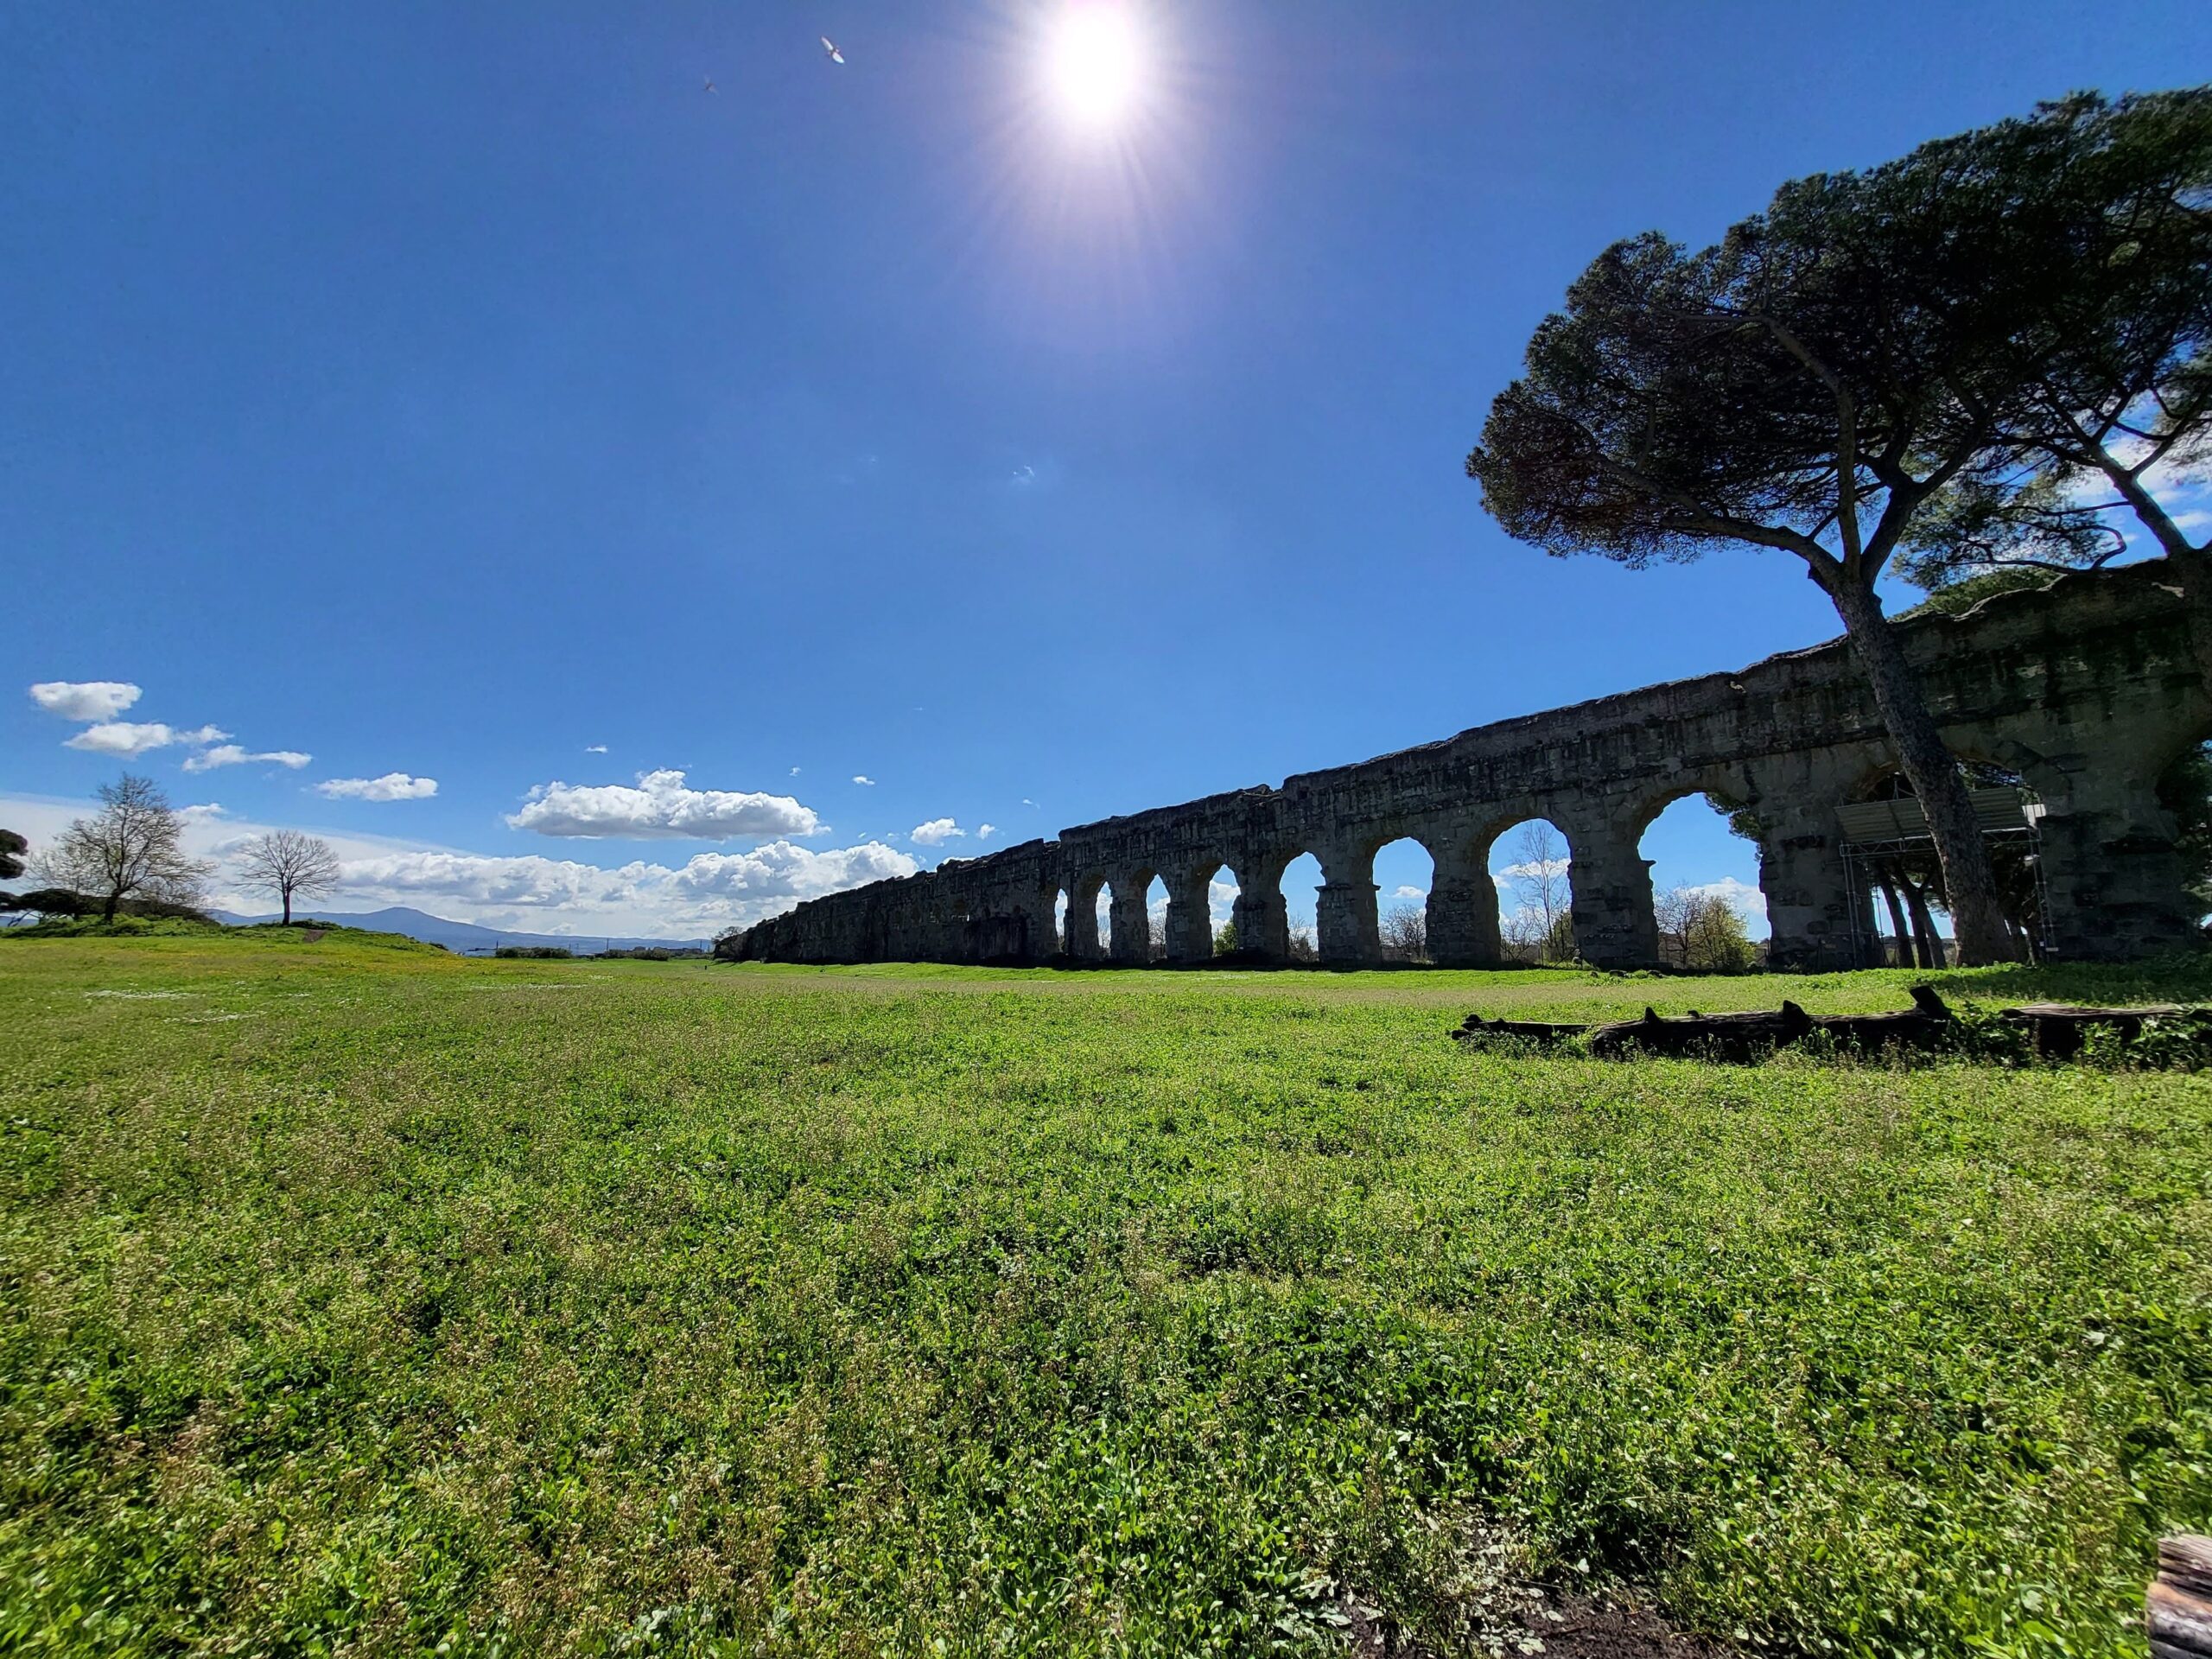 Foto de um grande aqueduto antigo em meio a um gramado verde.